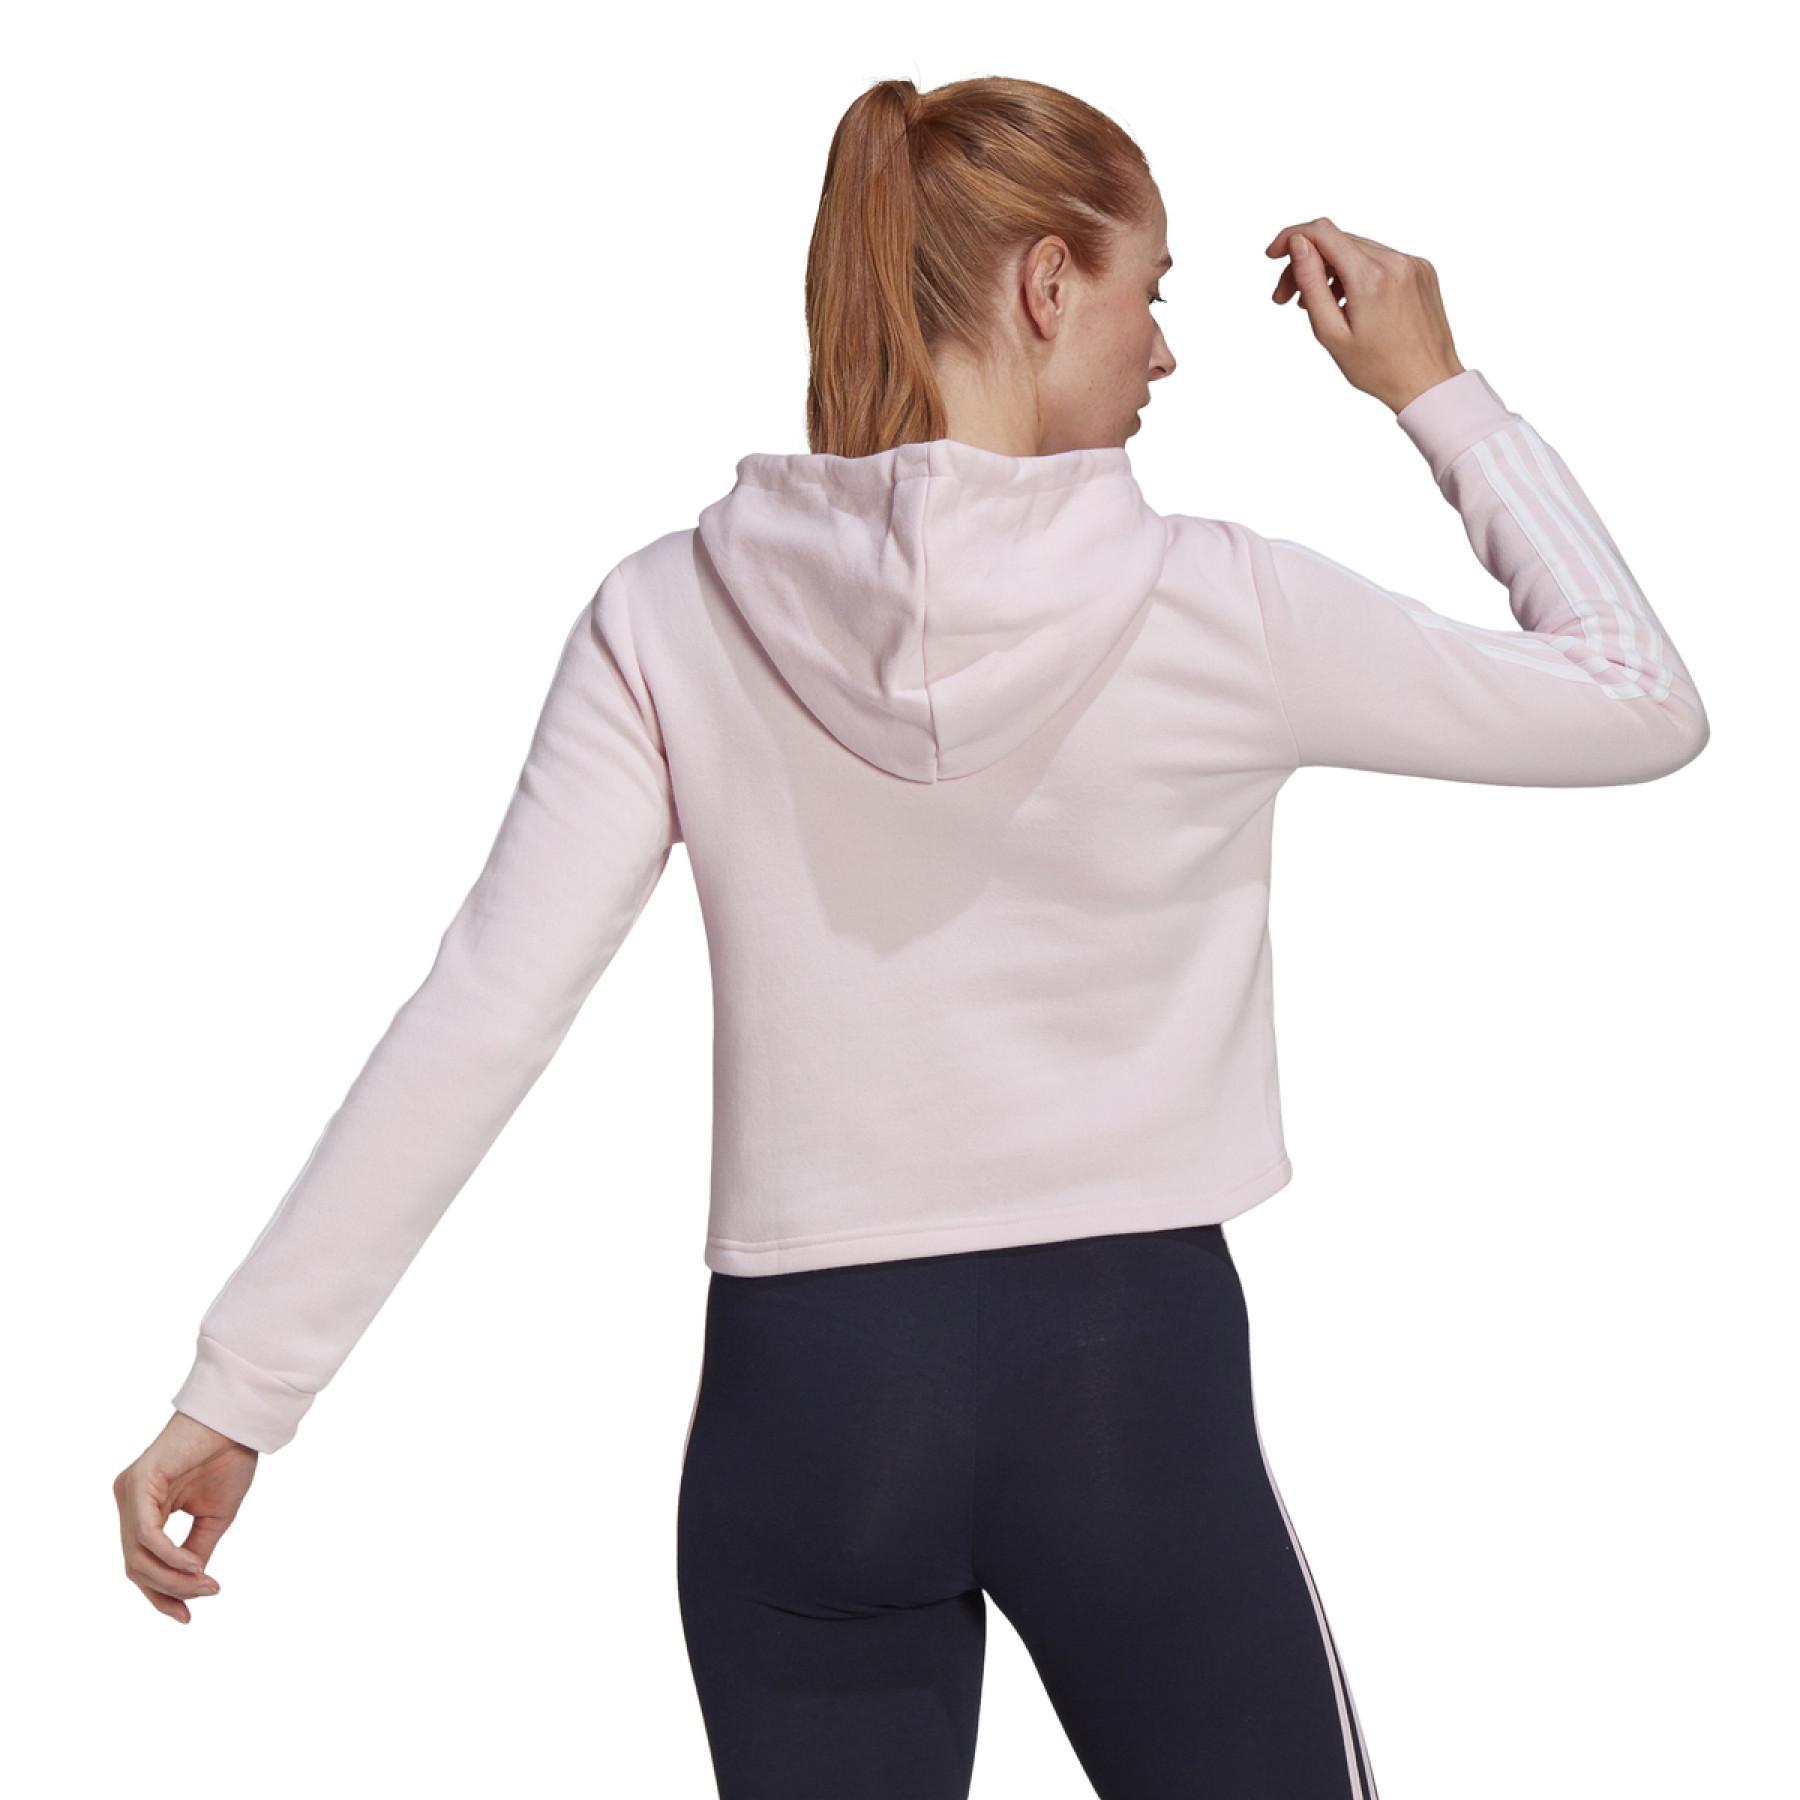 Camisola com capuz curto feminino adidas Essentials Logo Colorblock Fleece